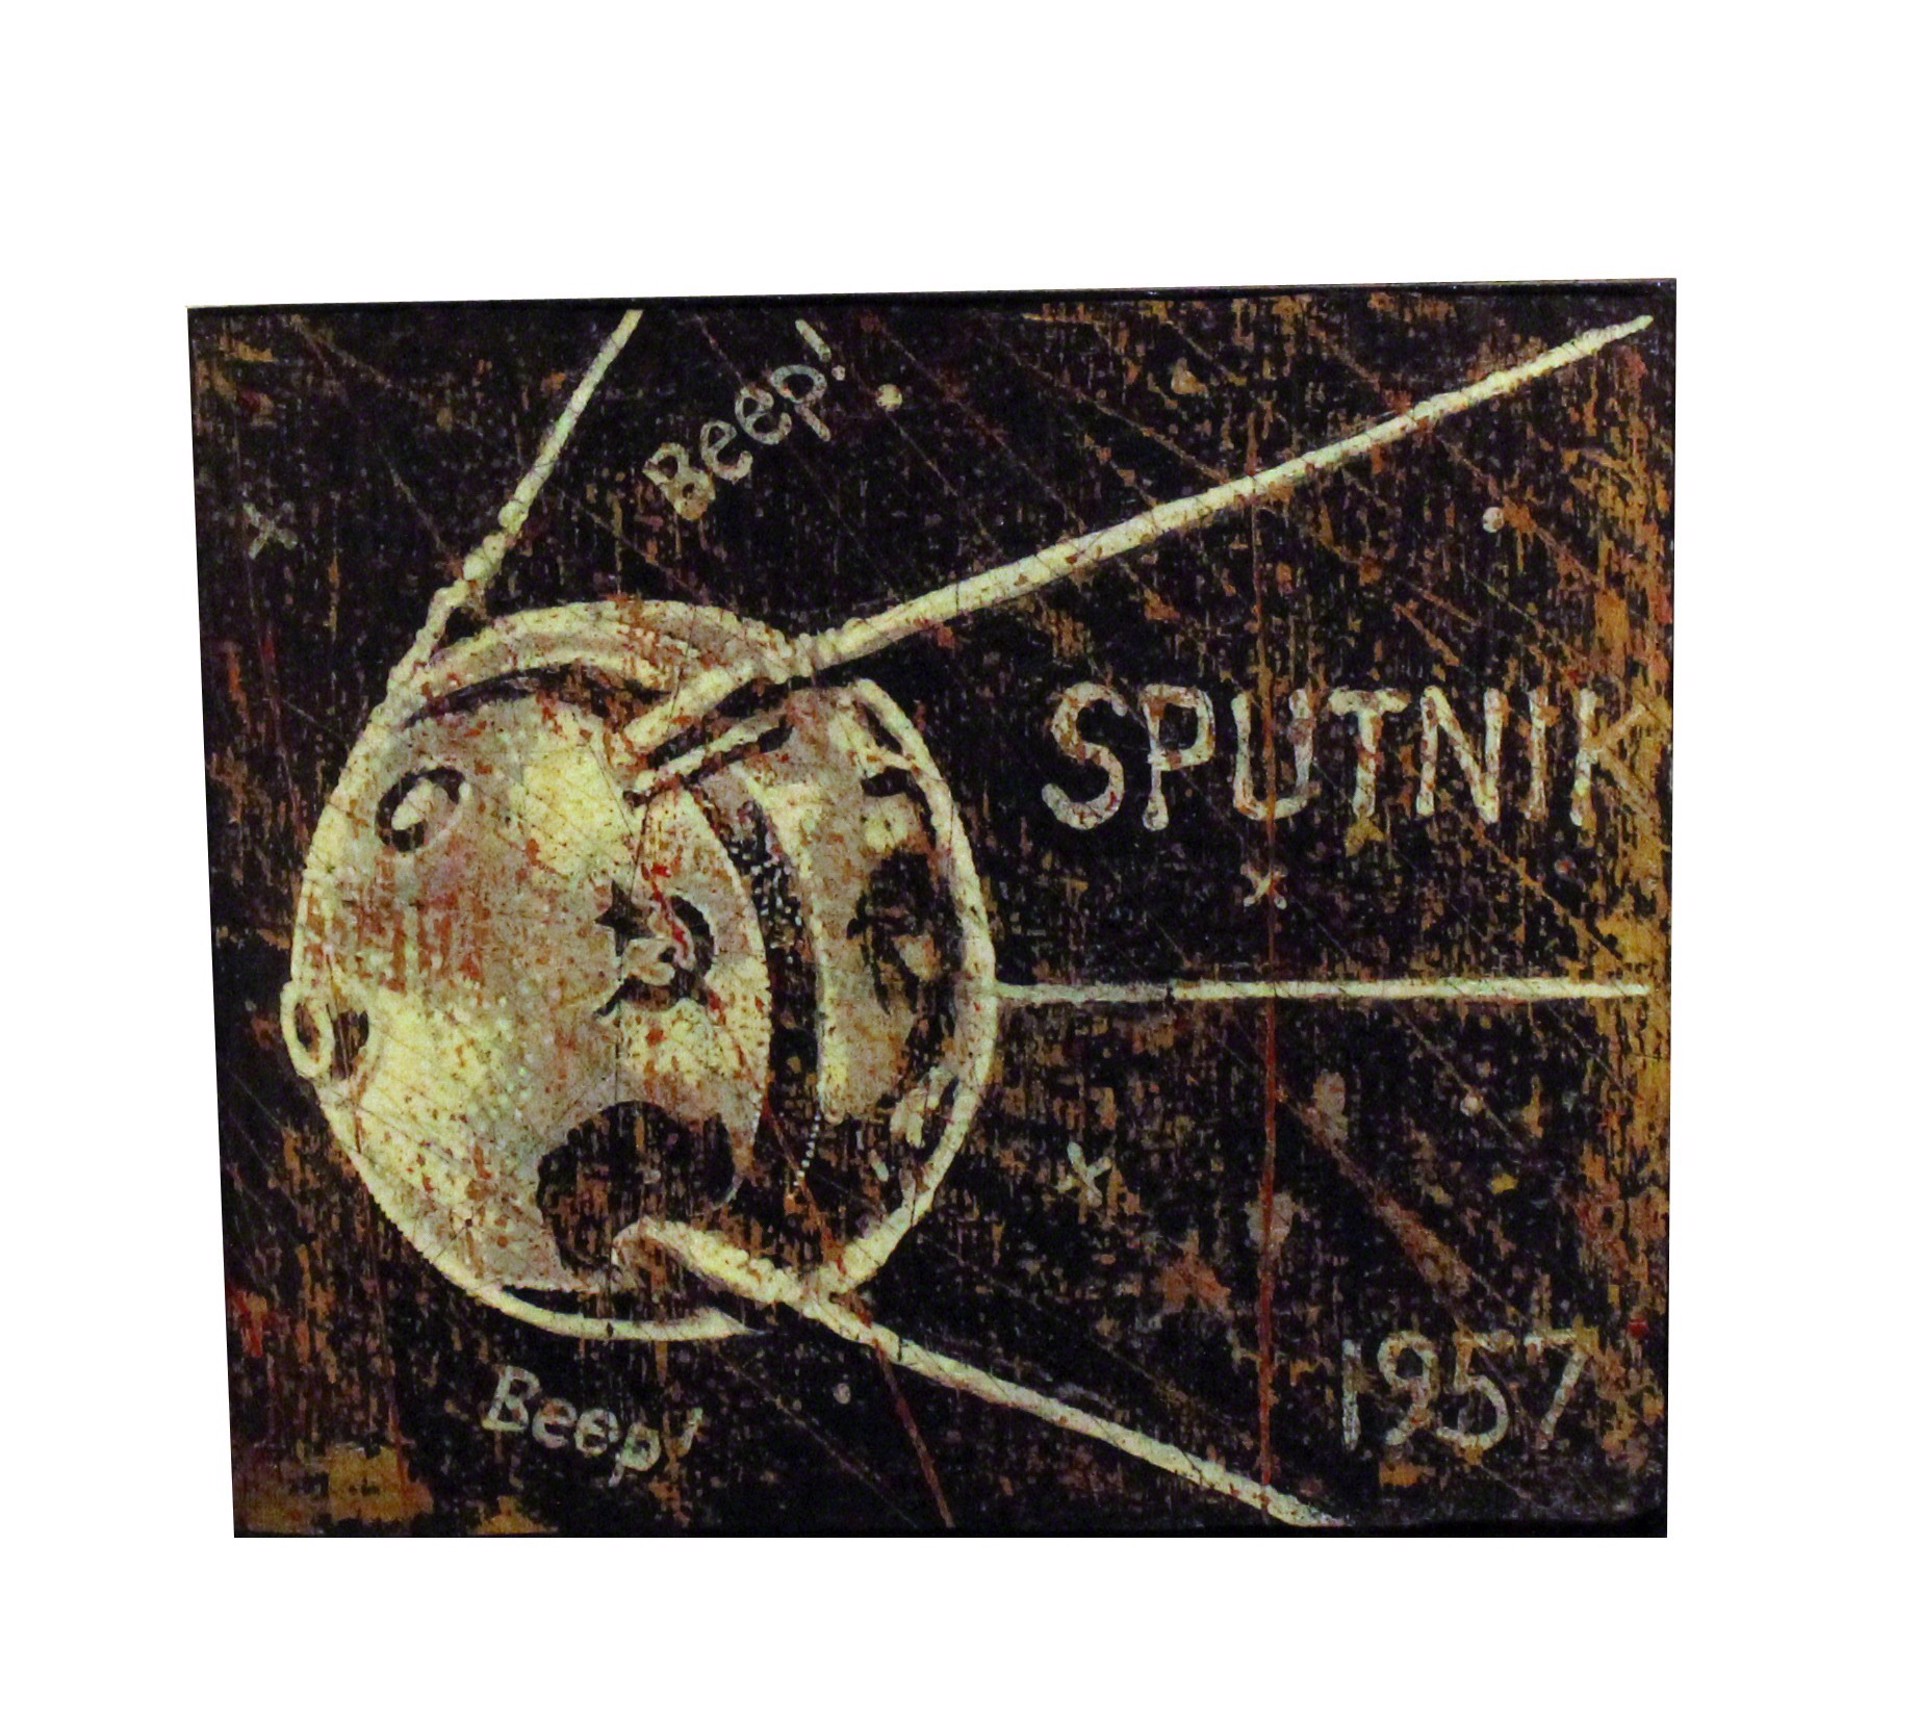 Sputnik 57 (A.P.) by Jon Langford